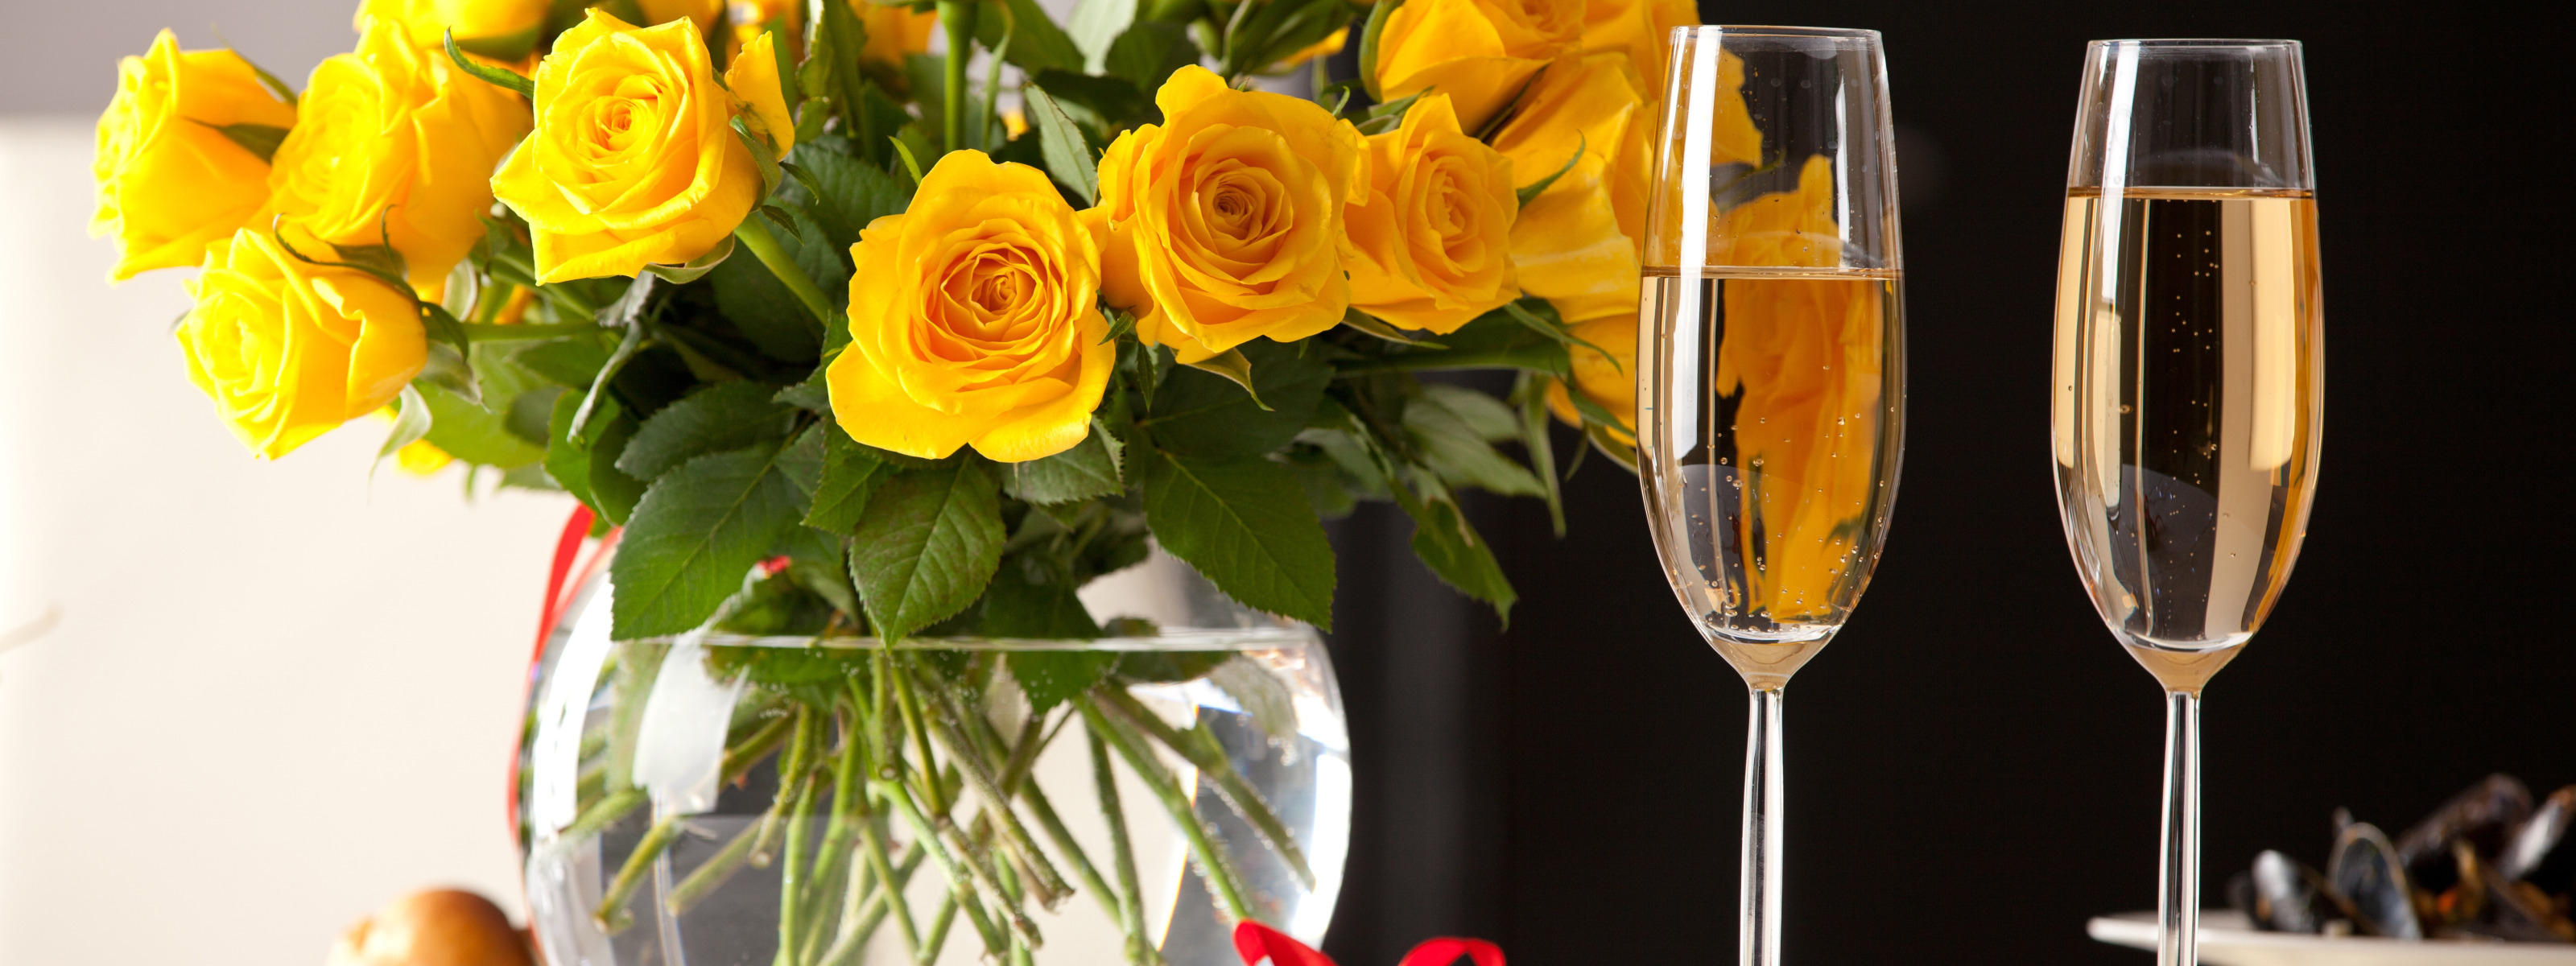 Шампанское и розы 34. Цветы в бокале. Бокалы с шампанским. Цветы и шампанское. Красивые цветы в бокале.